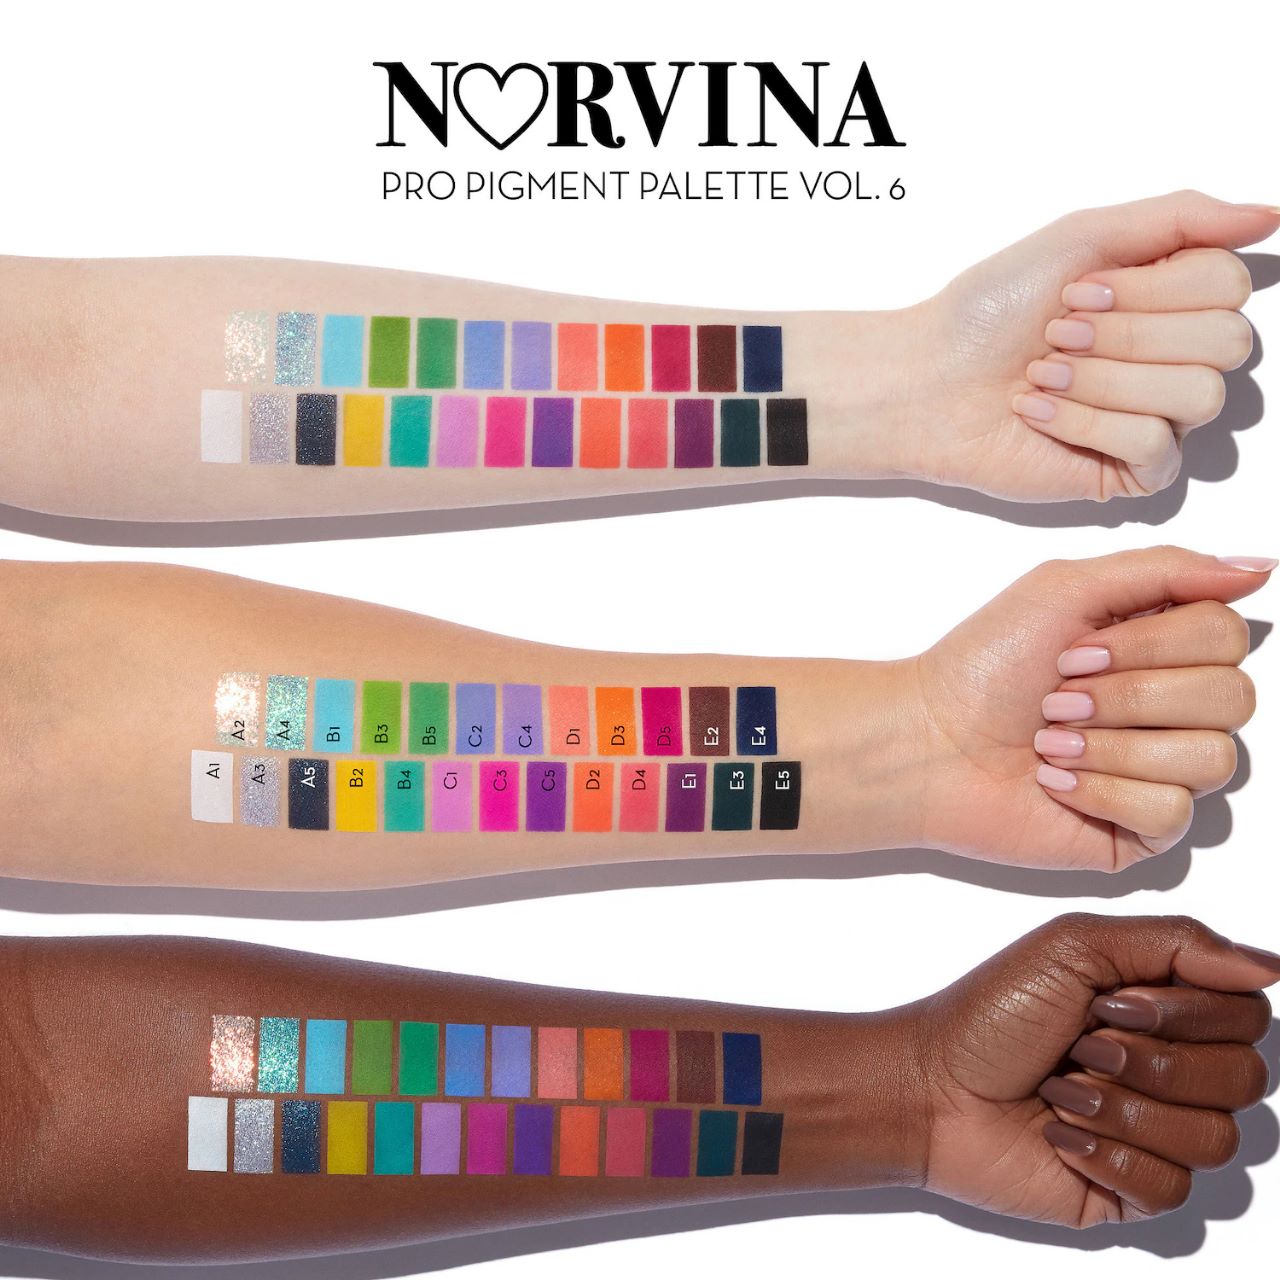 Norvina Pro Pigment Palette Vol. 6